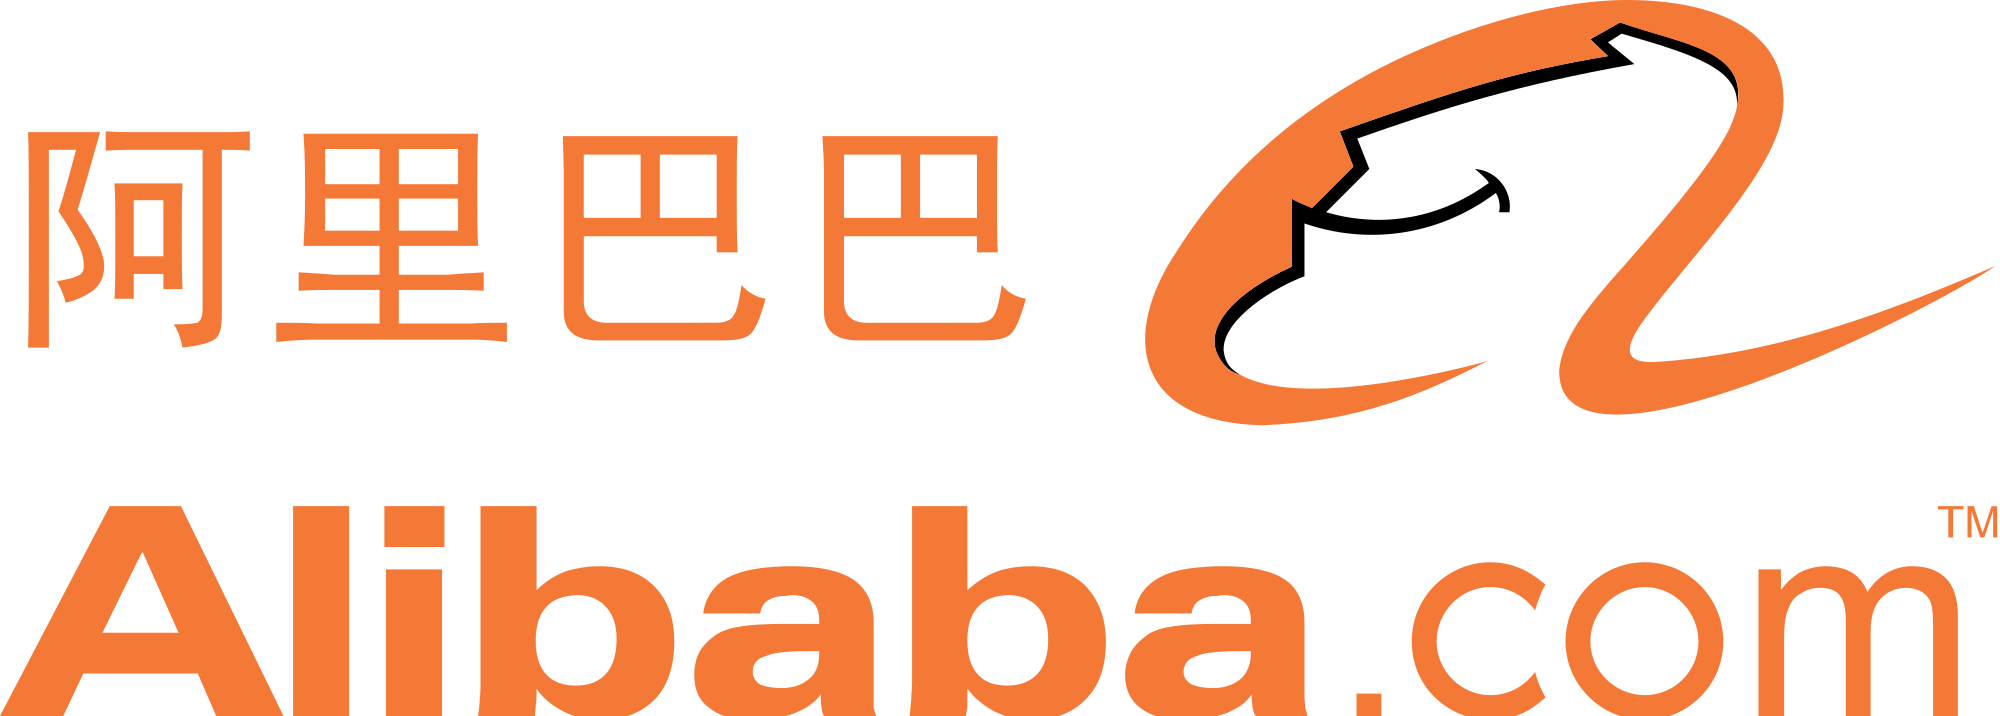 alibaba-logo-vector-at-vectorified-collection-of-alibaba-logo